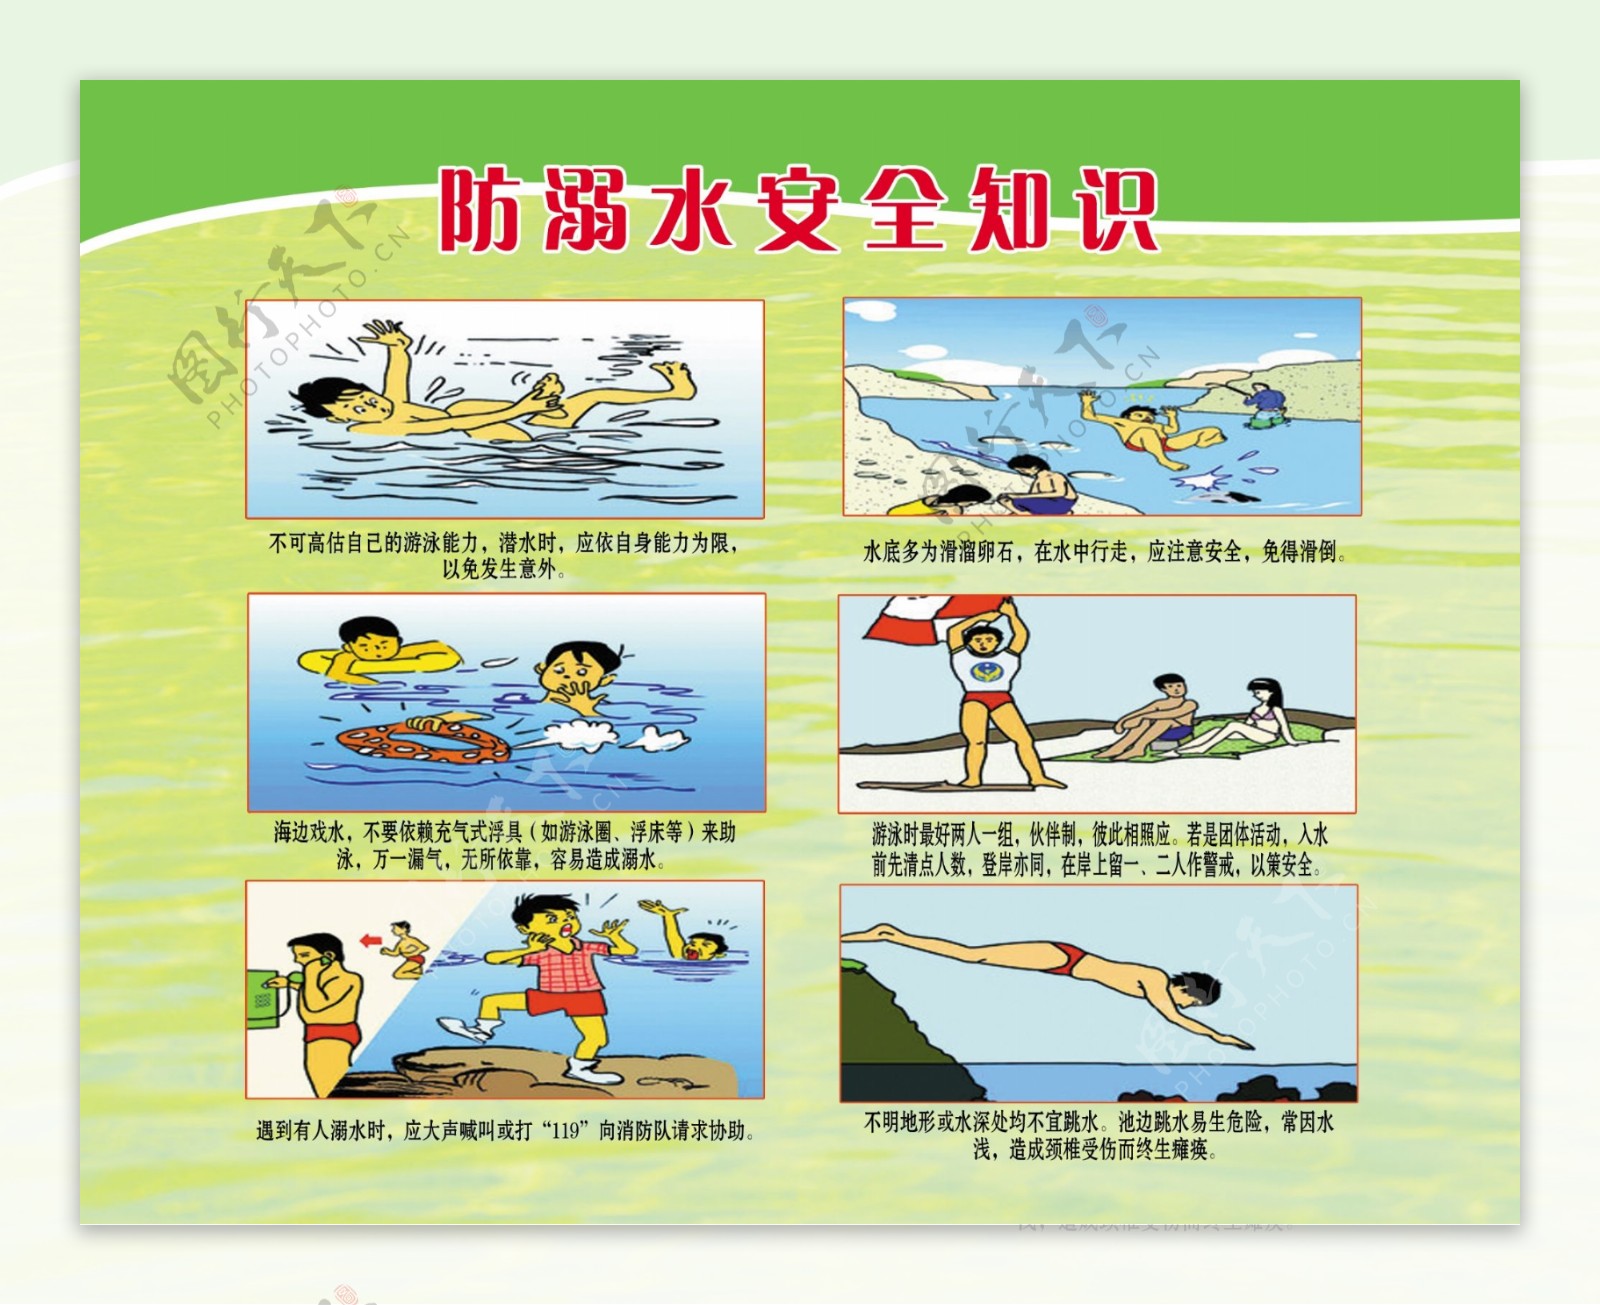 防溺水安全知识宣传漫画